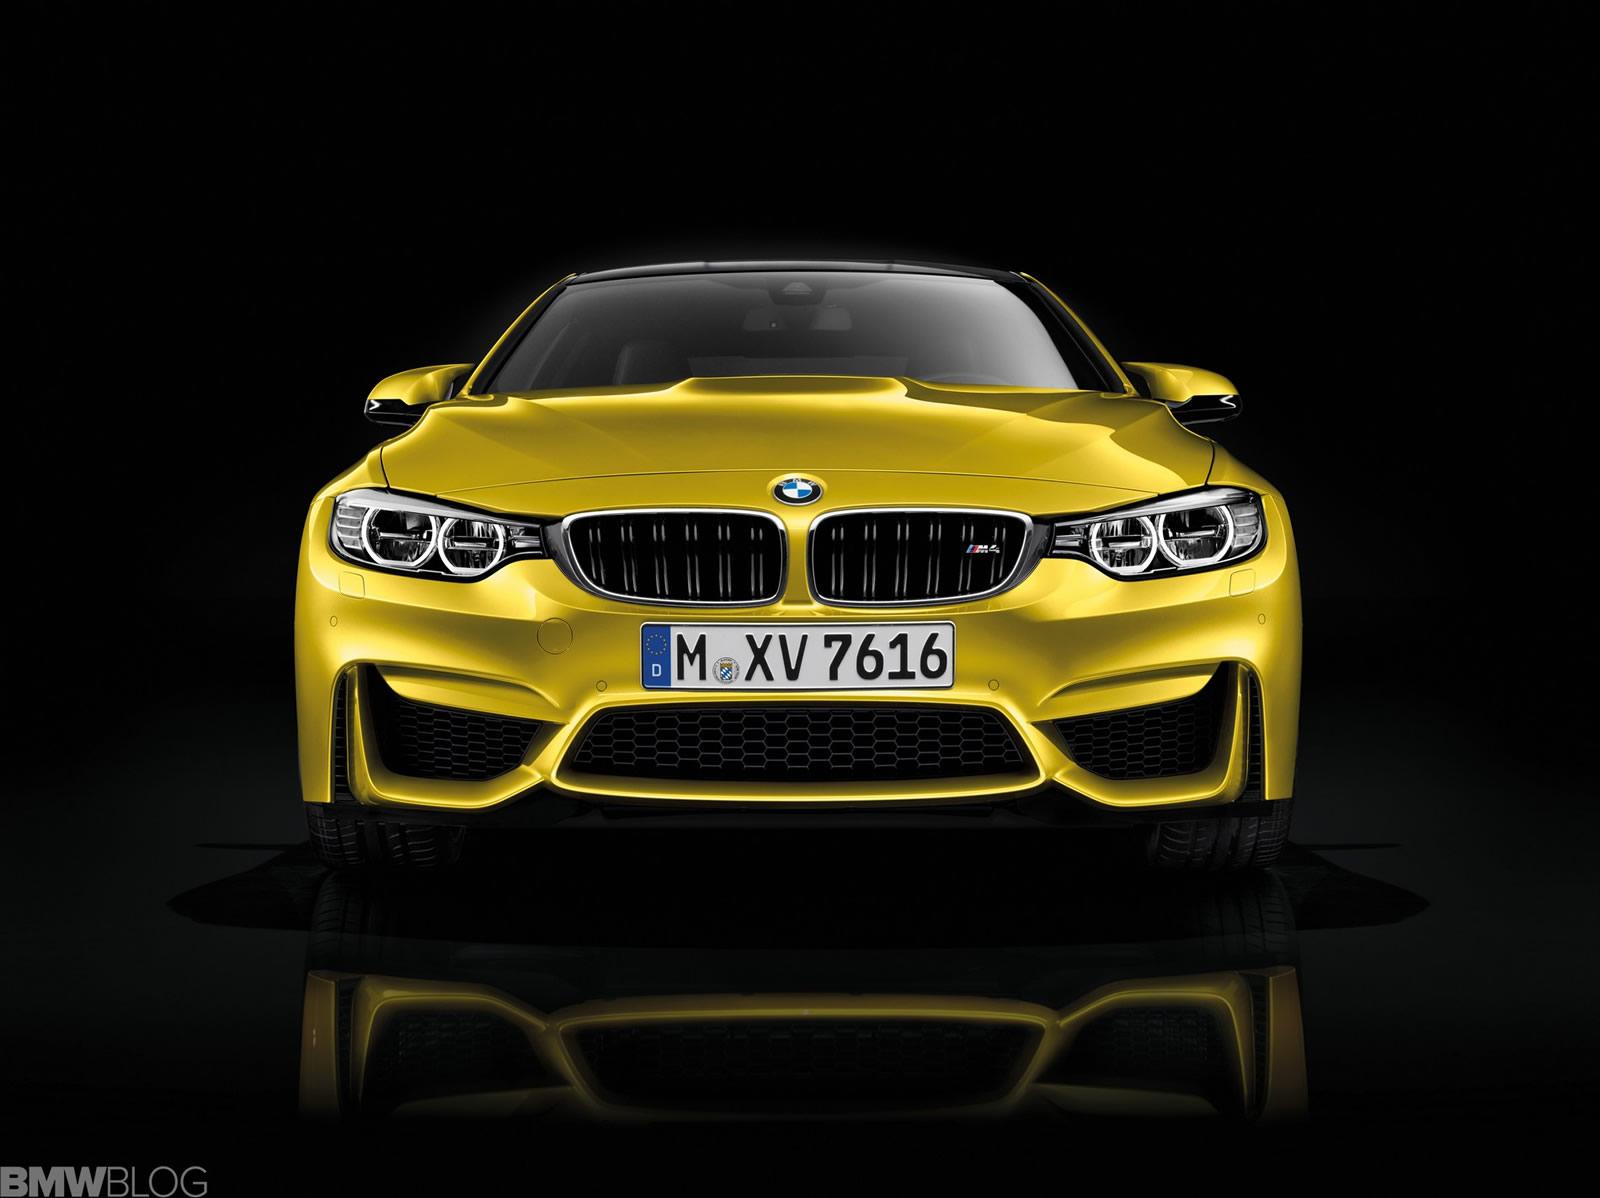 Sie wurden von der bmw m gmbh entwickelt und produziert. BMW Cars - News: 2014 M3 & M4 photos and specifications